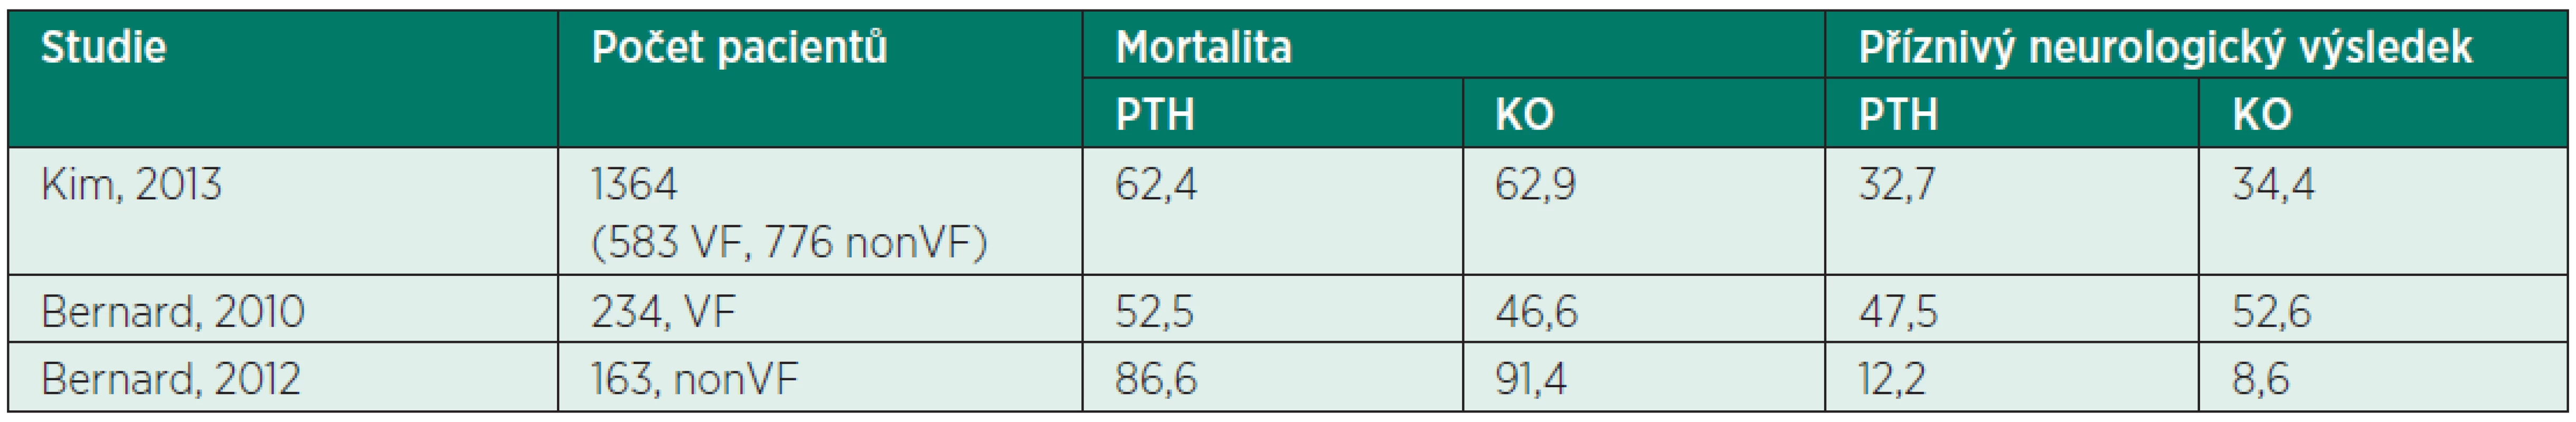 Výsledky přežití (%) klinických studií testujících vliv PTH na prognózu nemocných po OHCA